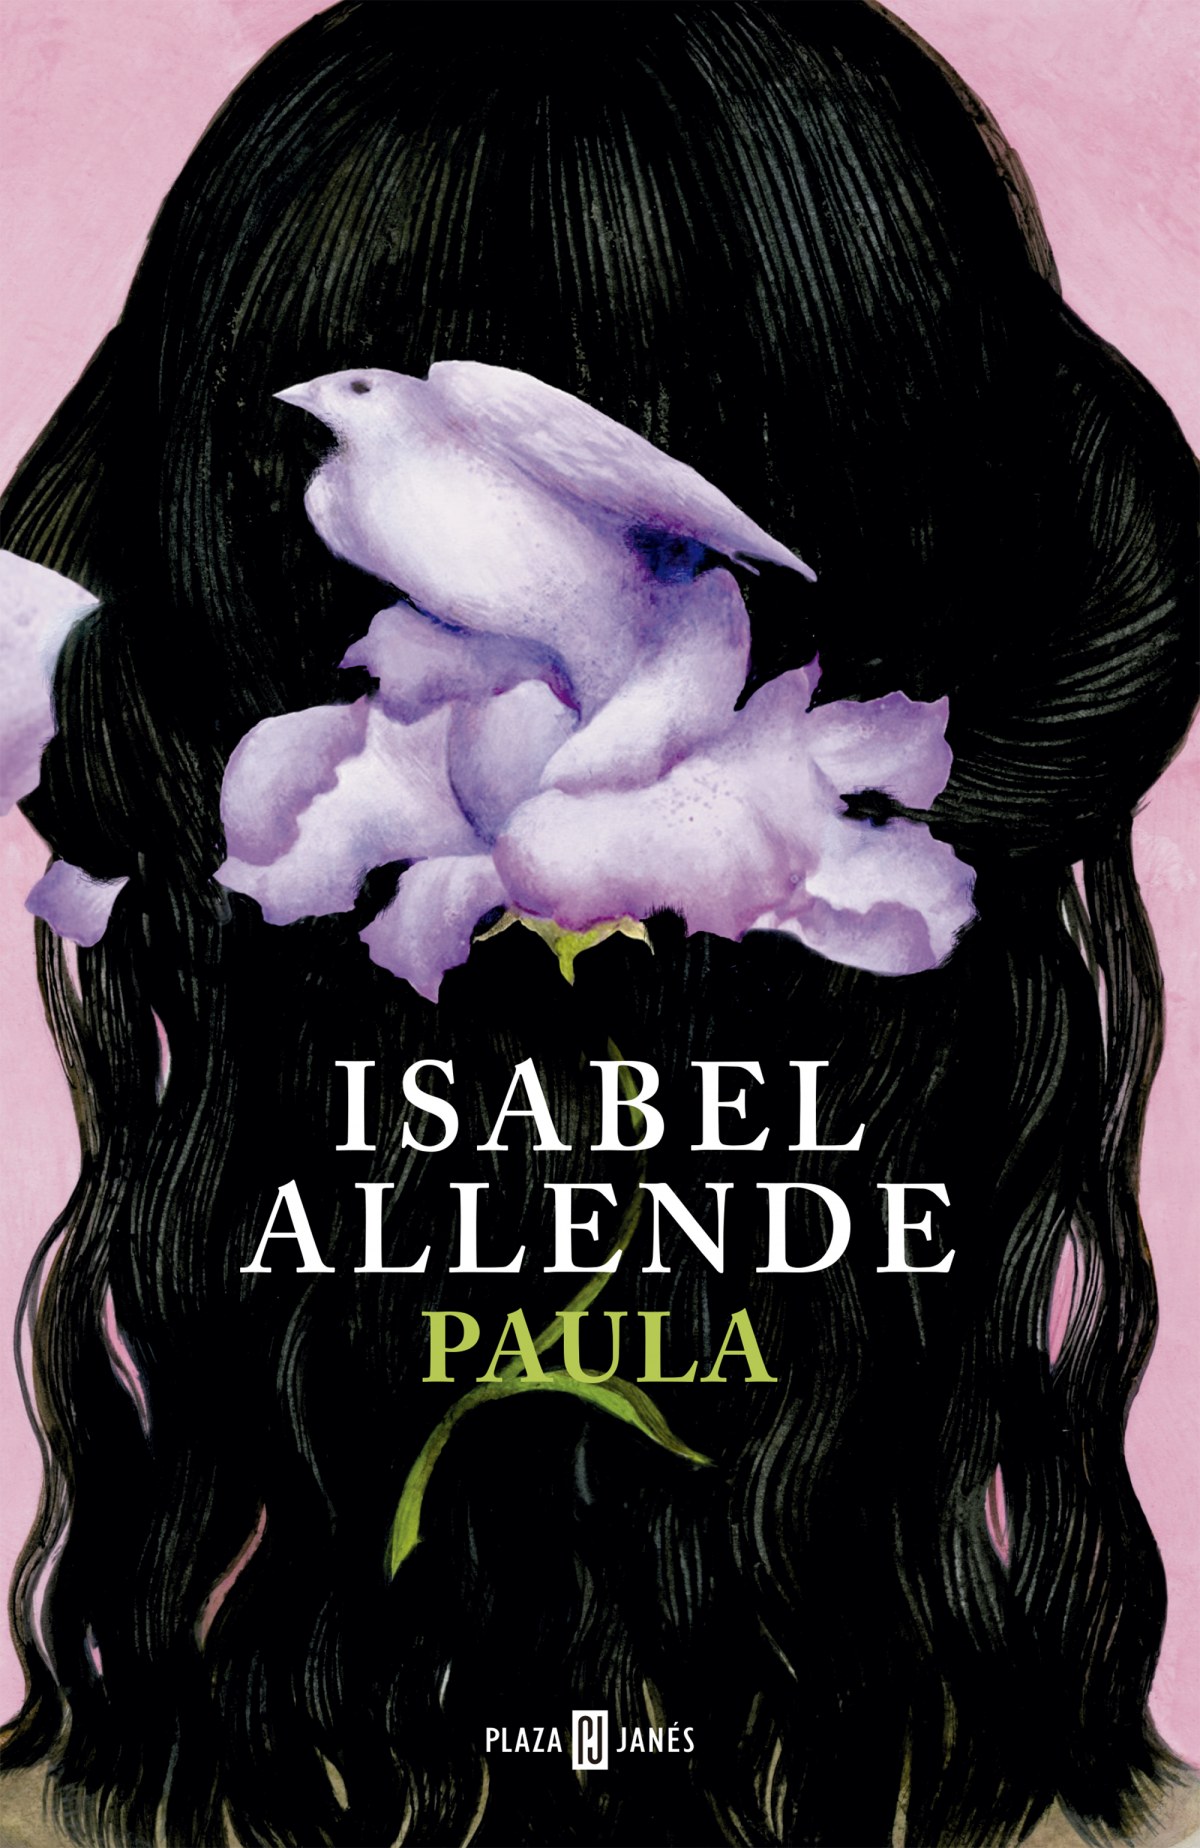 Paula - Allende, Isabel